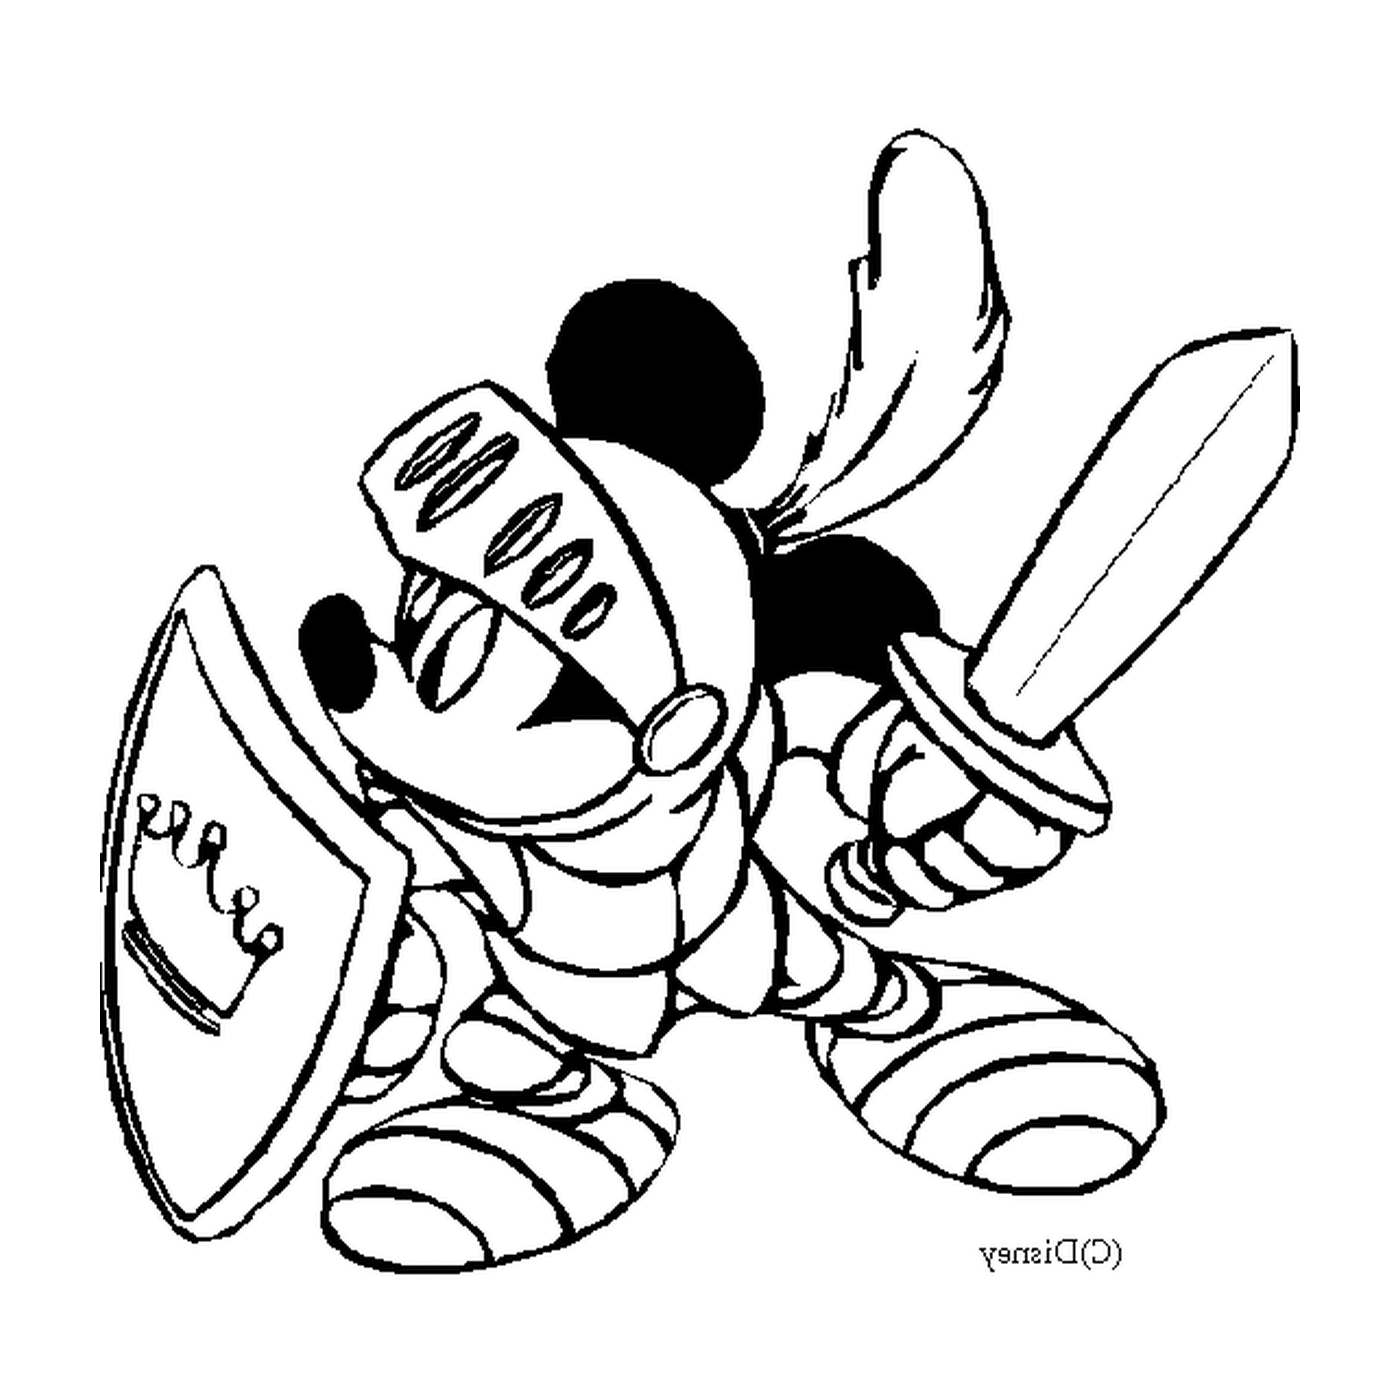  Микки рыцарь: Микки Маус в бронежилетах с мечом 